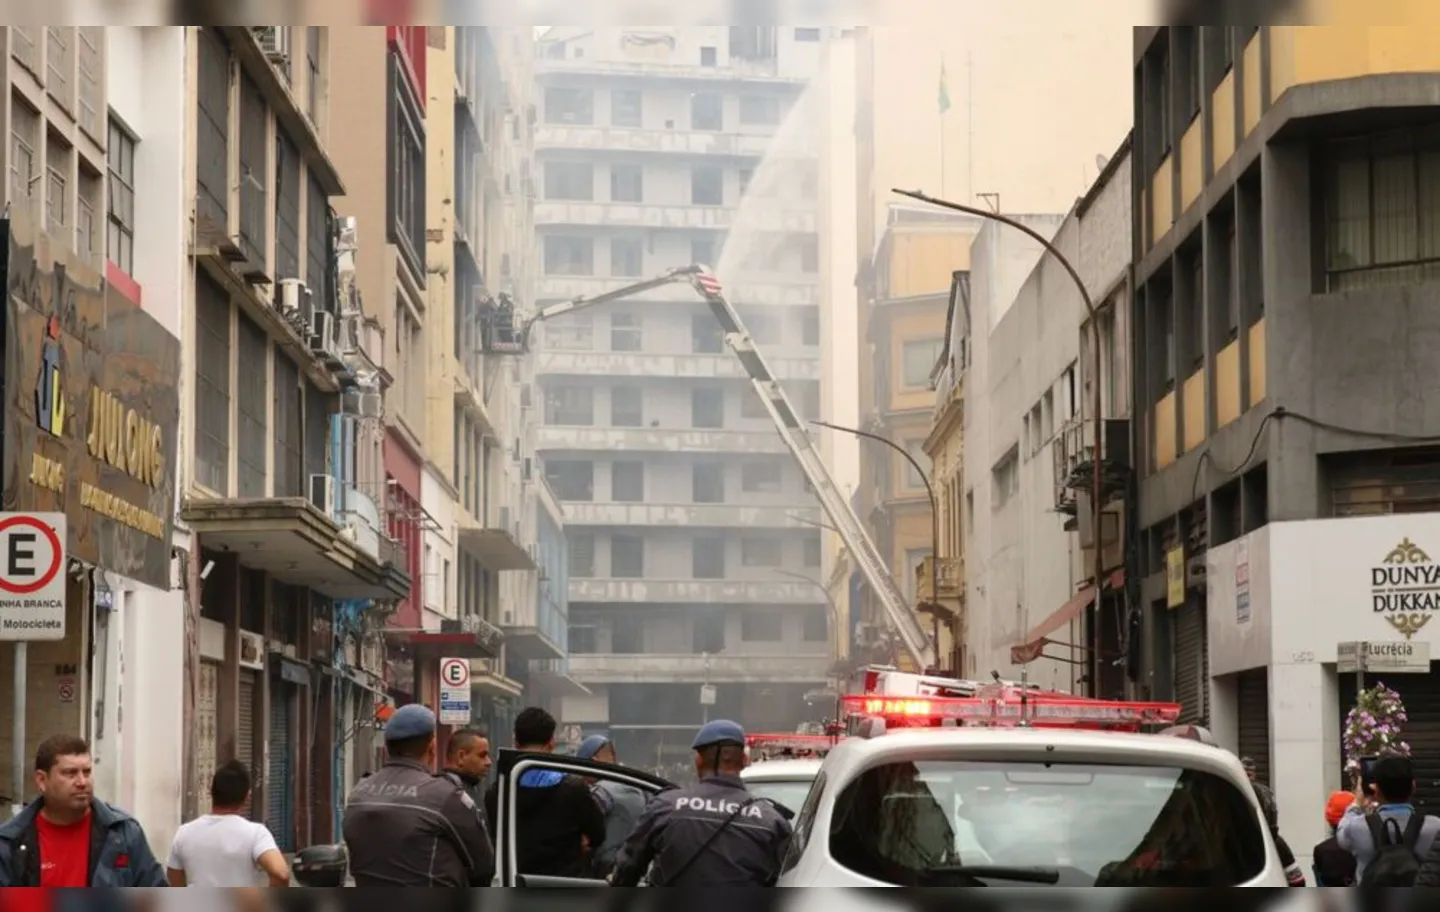 Estrutura comproometida pelo fogo será demolida pela Prefeitura de São Paulo